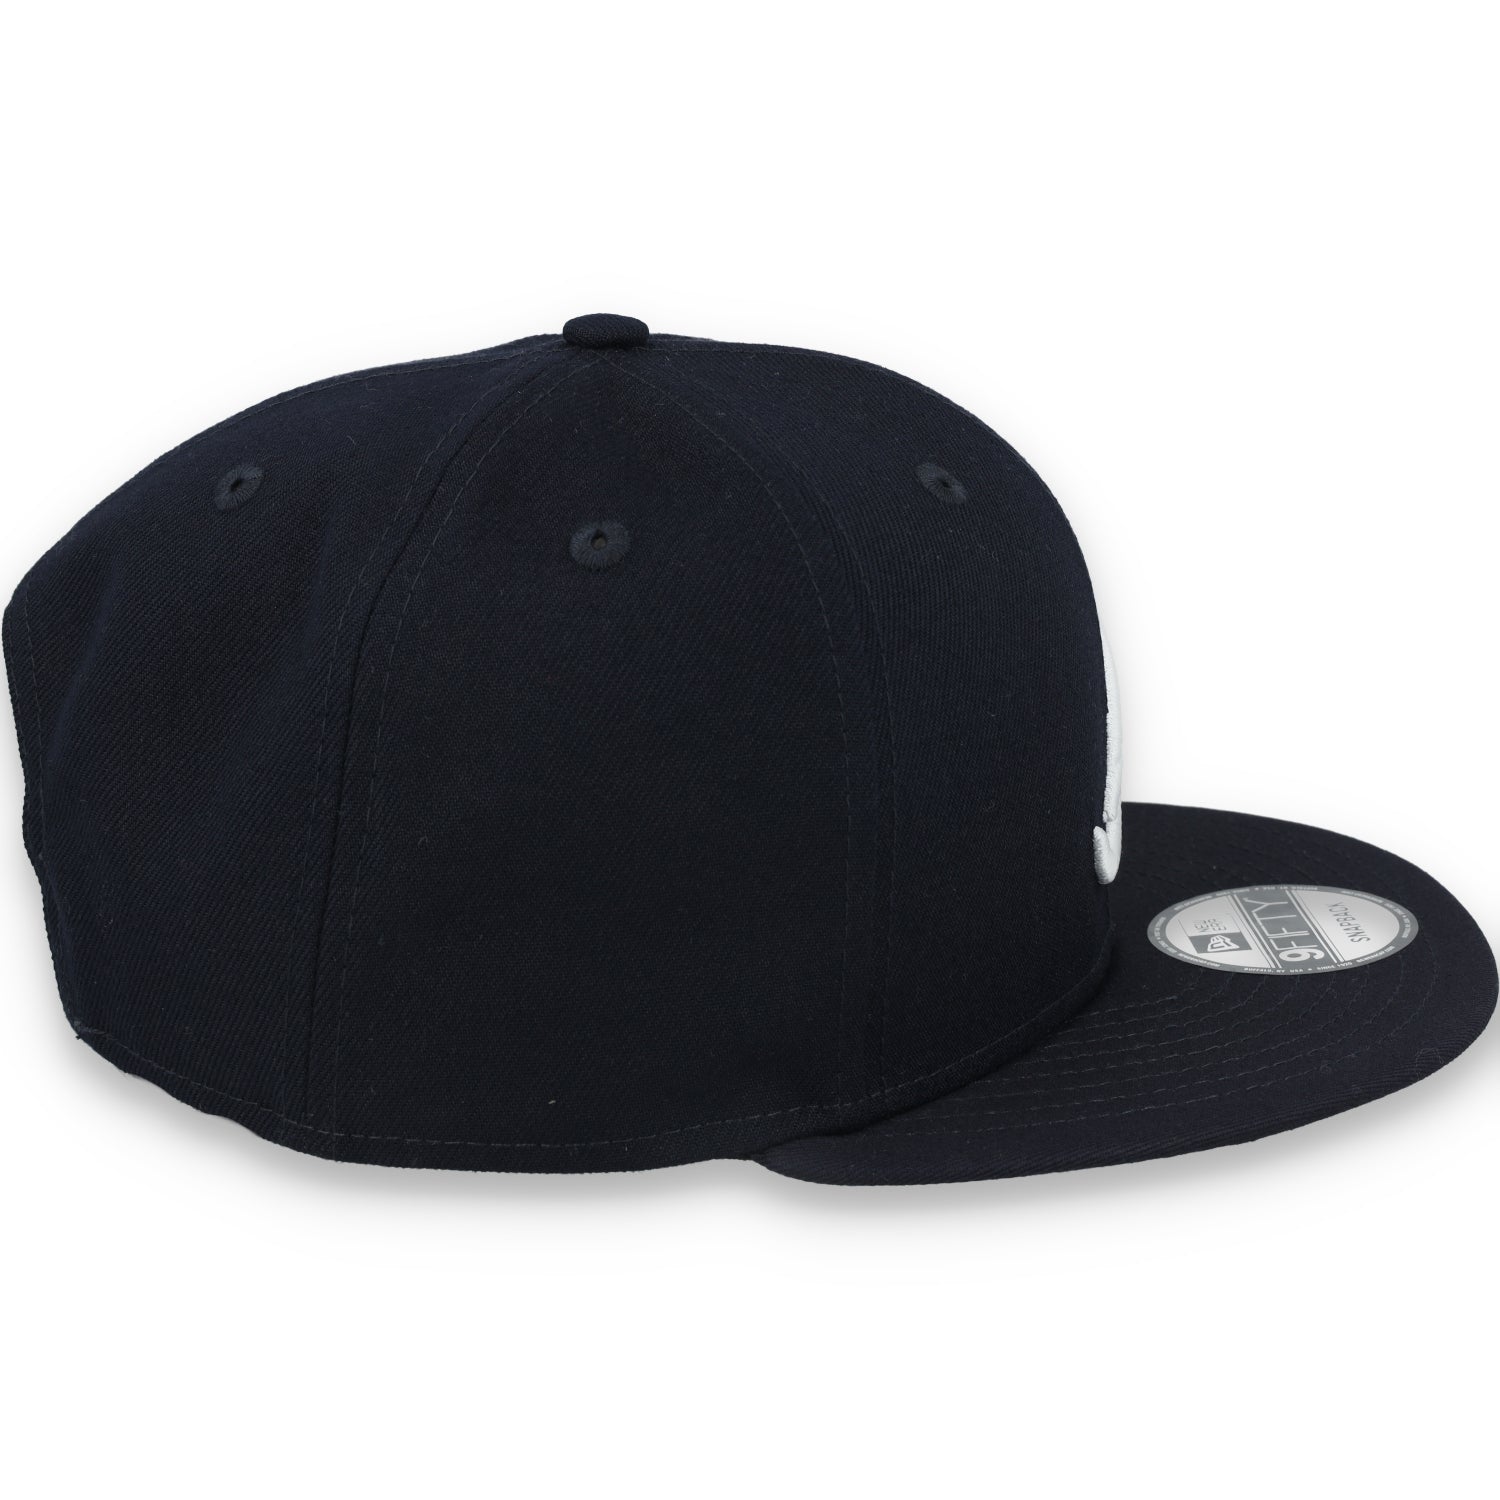 New Era Atlanta Braves On Field Alternative  9Fifty Snapback hat-Black/white